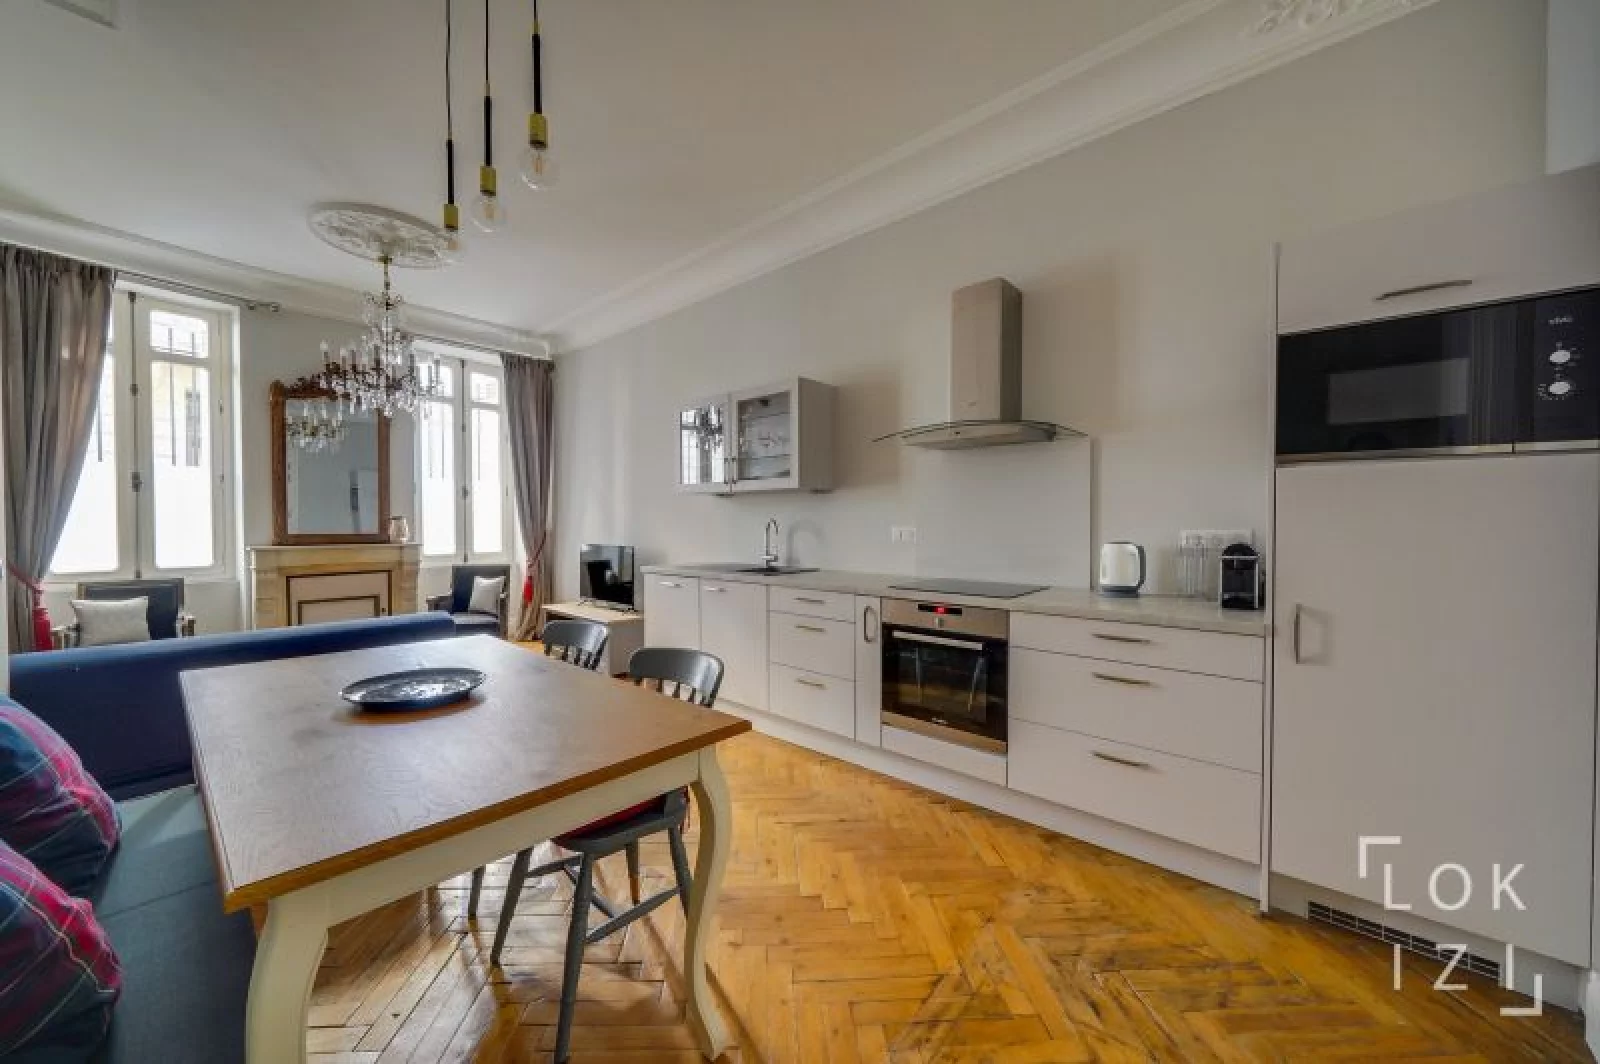 Location appartement meublé 49m²  (Bordeaux centre - Pey Berland)